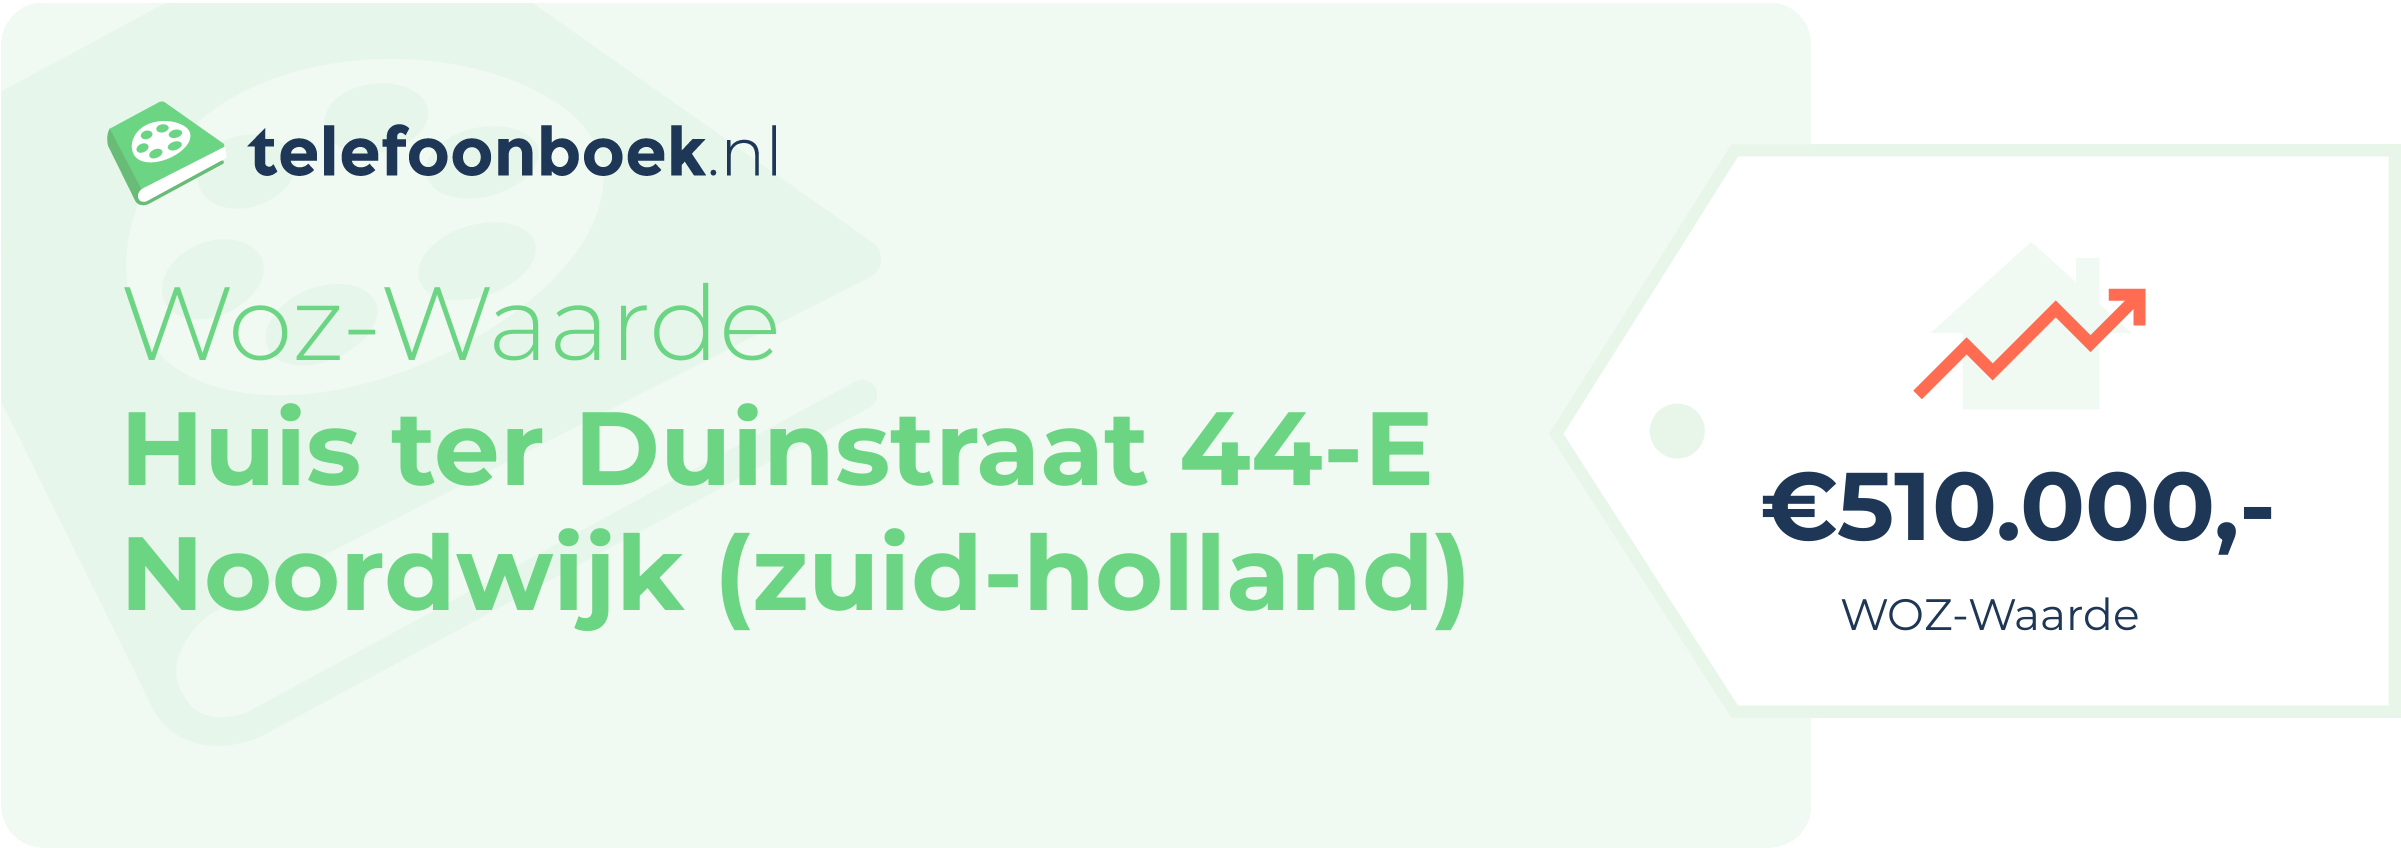 WOZ-waarde Huis Ter Duinstraat 44-E Noordwijk (Zuid-Holland)